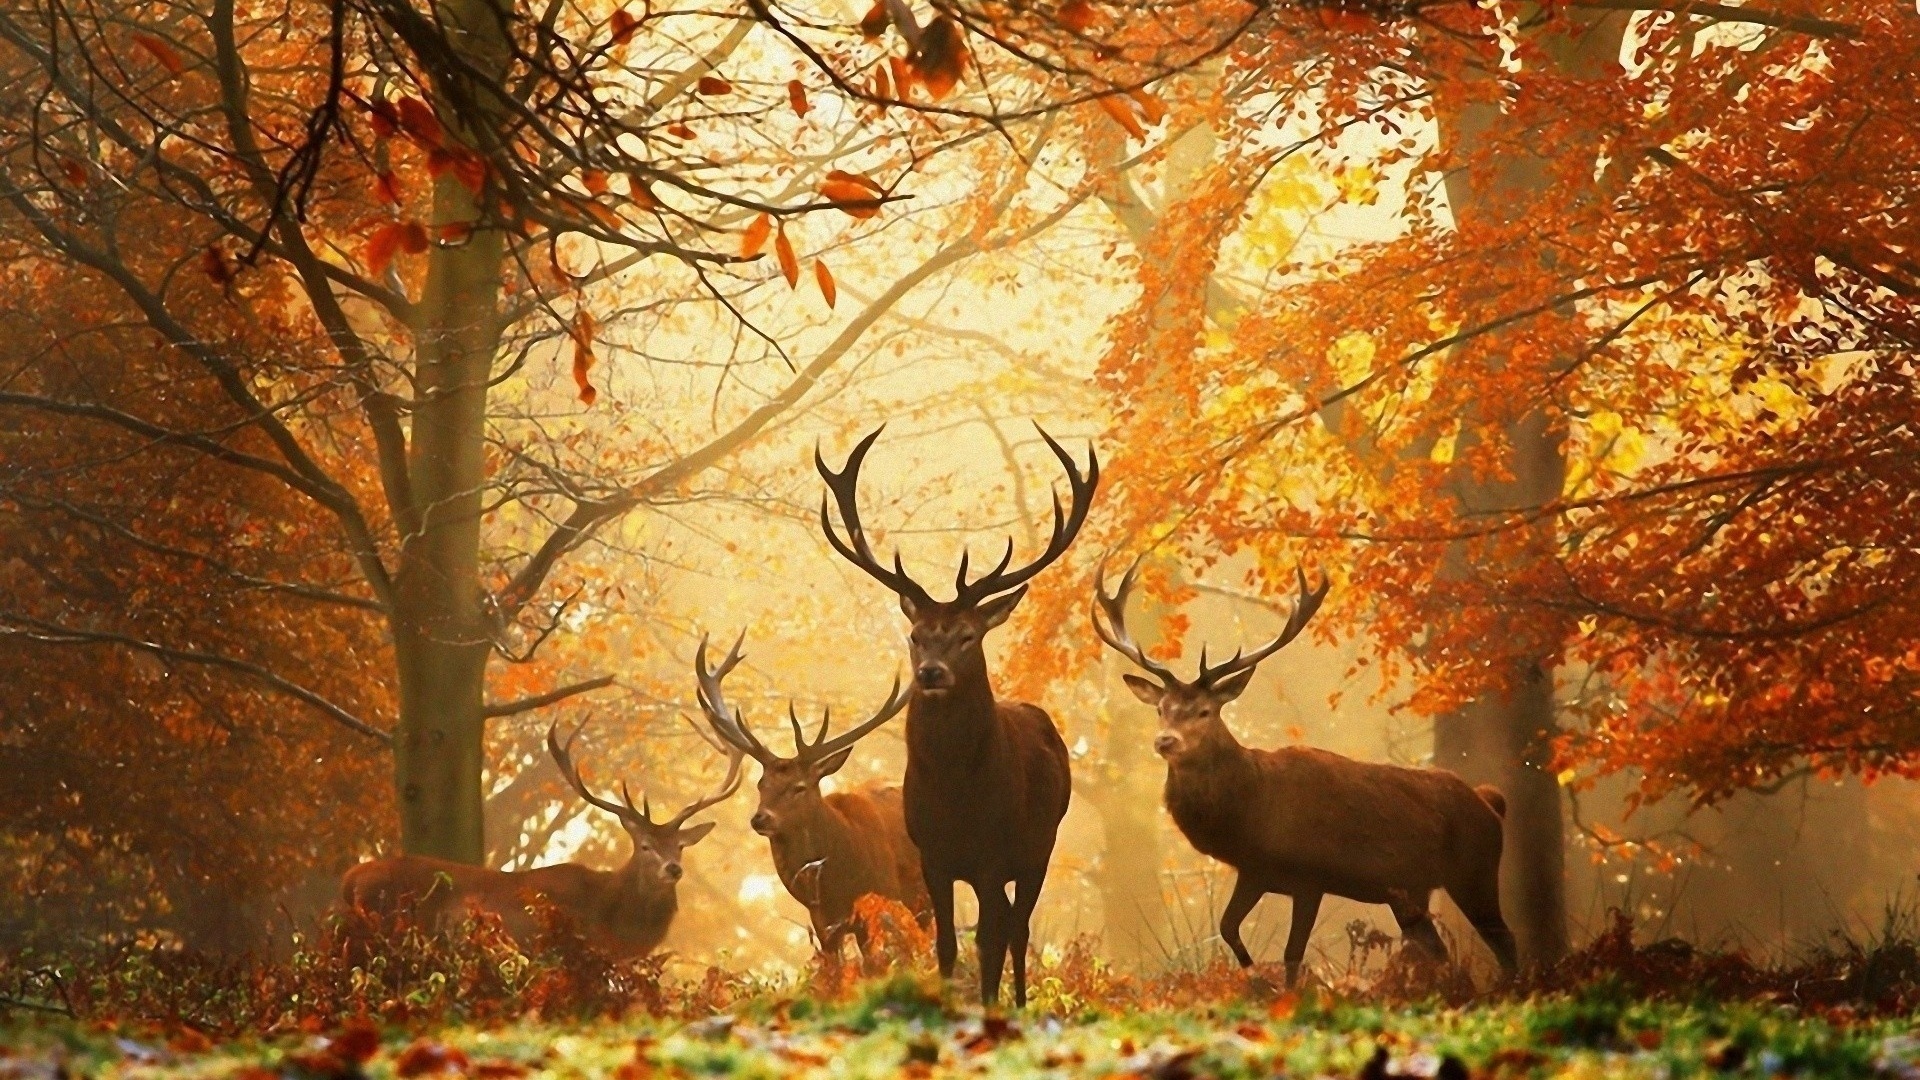 You Can Wild Deer Animal Desktop Wallpaper In Your Puter